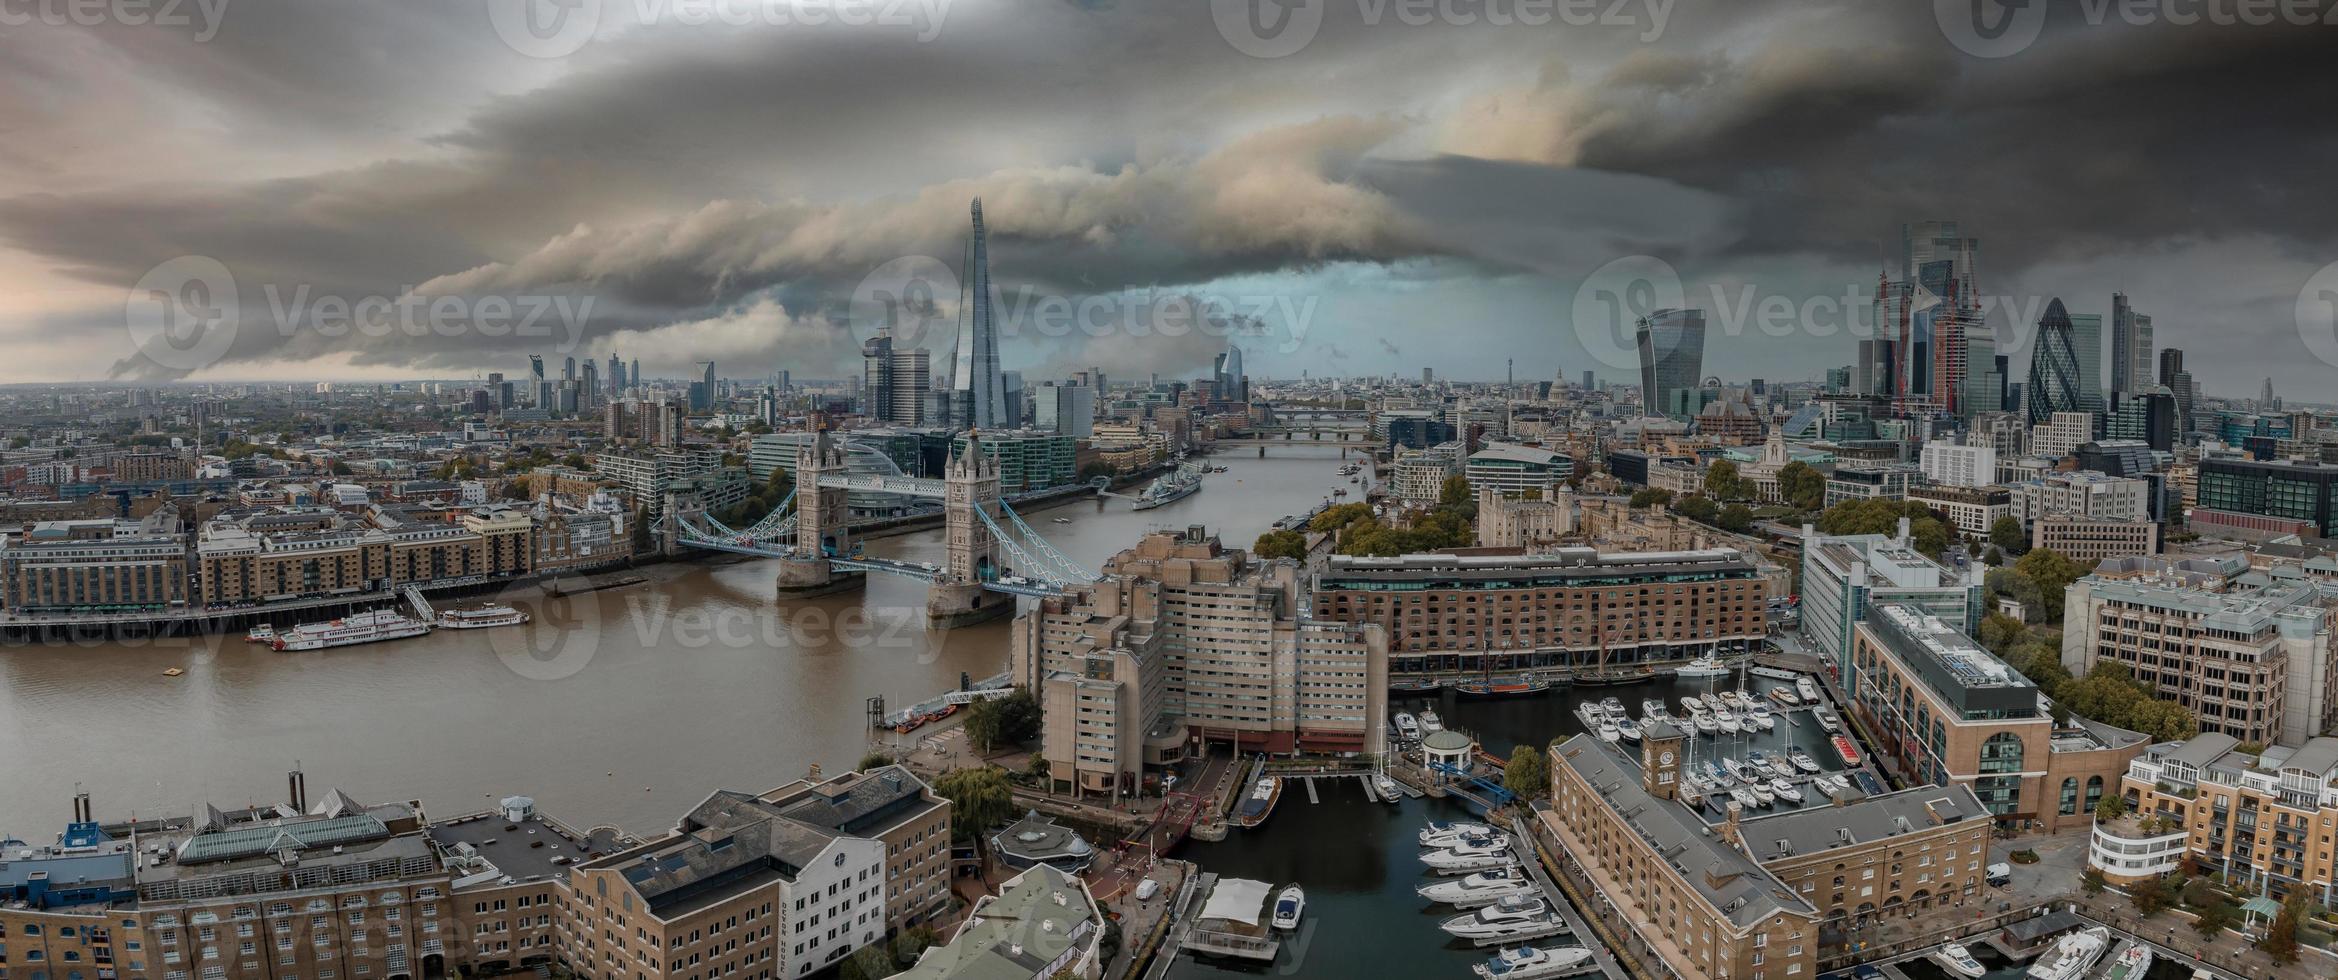 vista aérea da Tower Bridge, no centro de Londres, da margem sul do Tamisa. foto